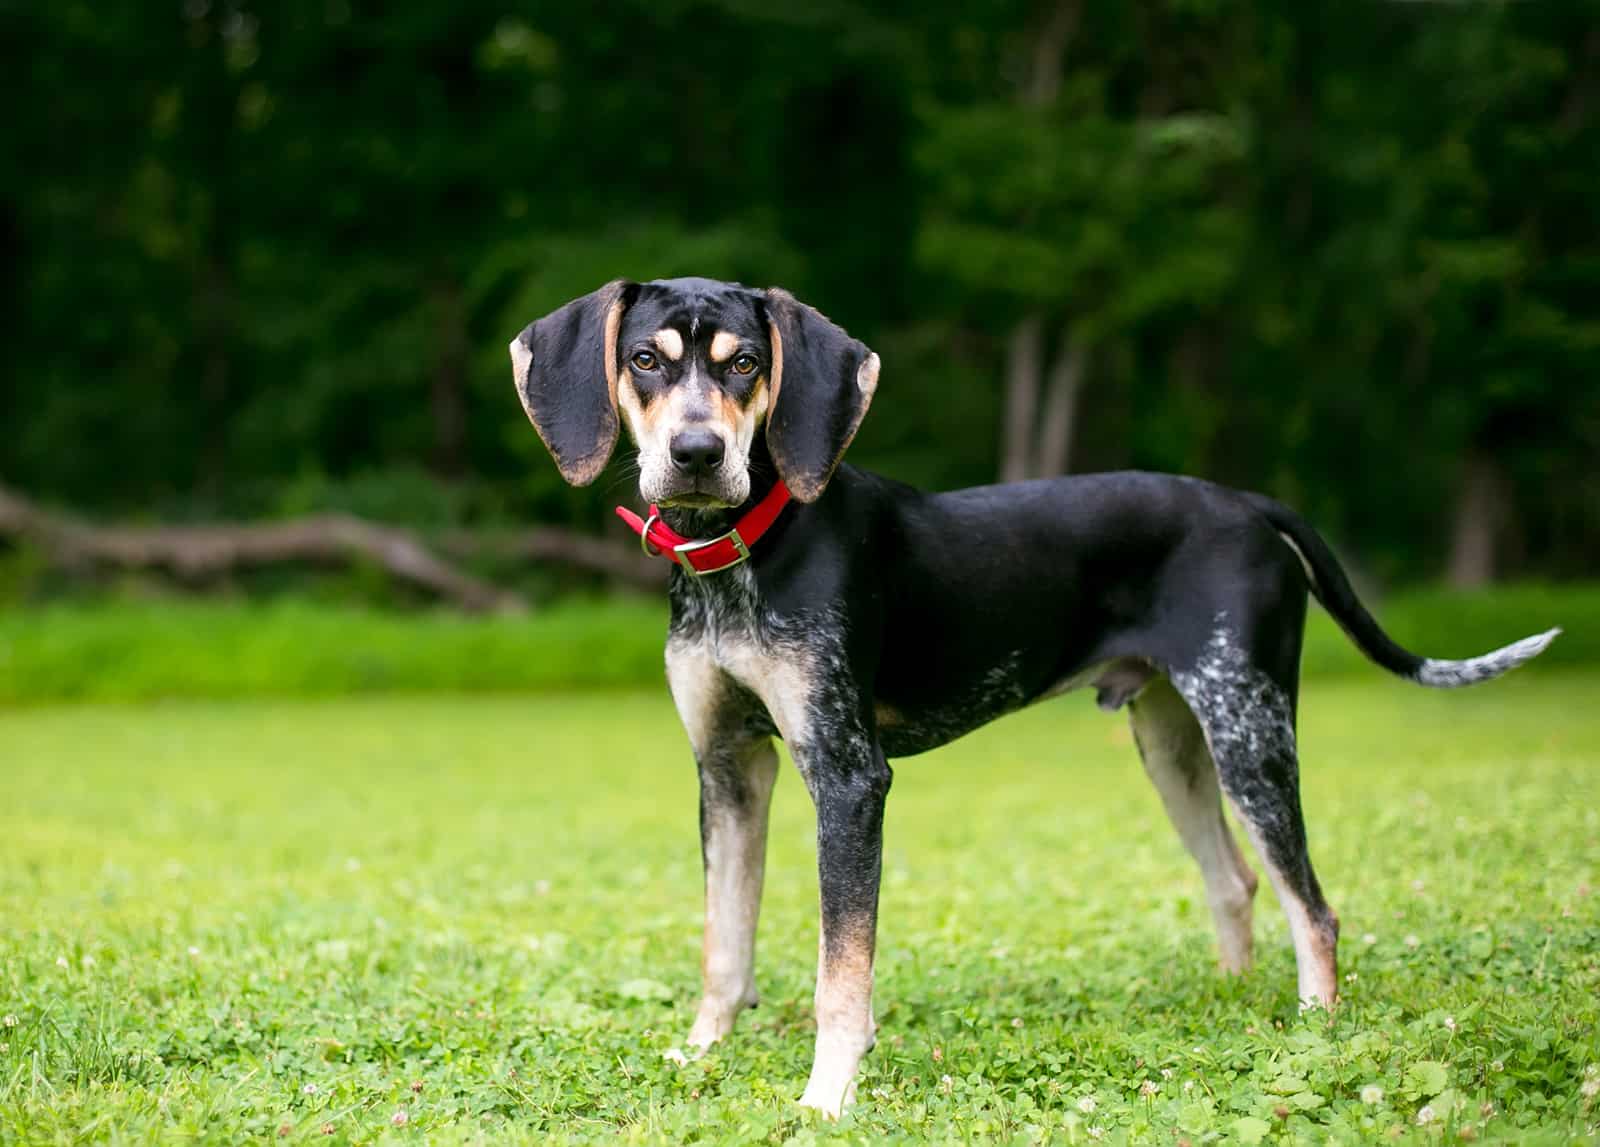 A Bluetick Coonhound dog